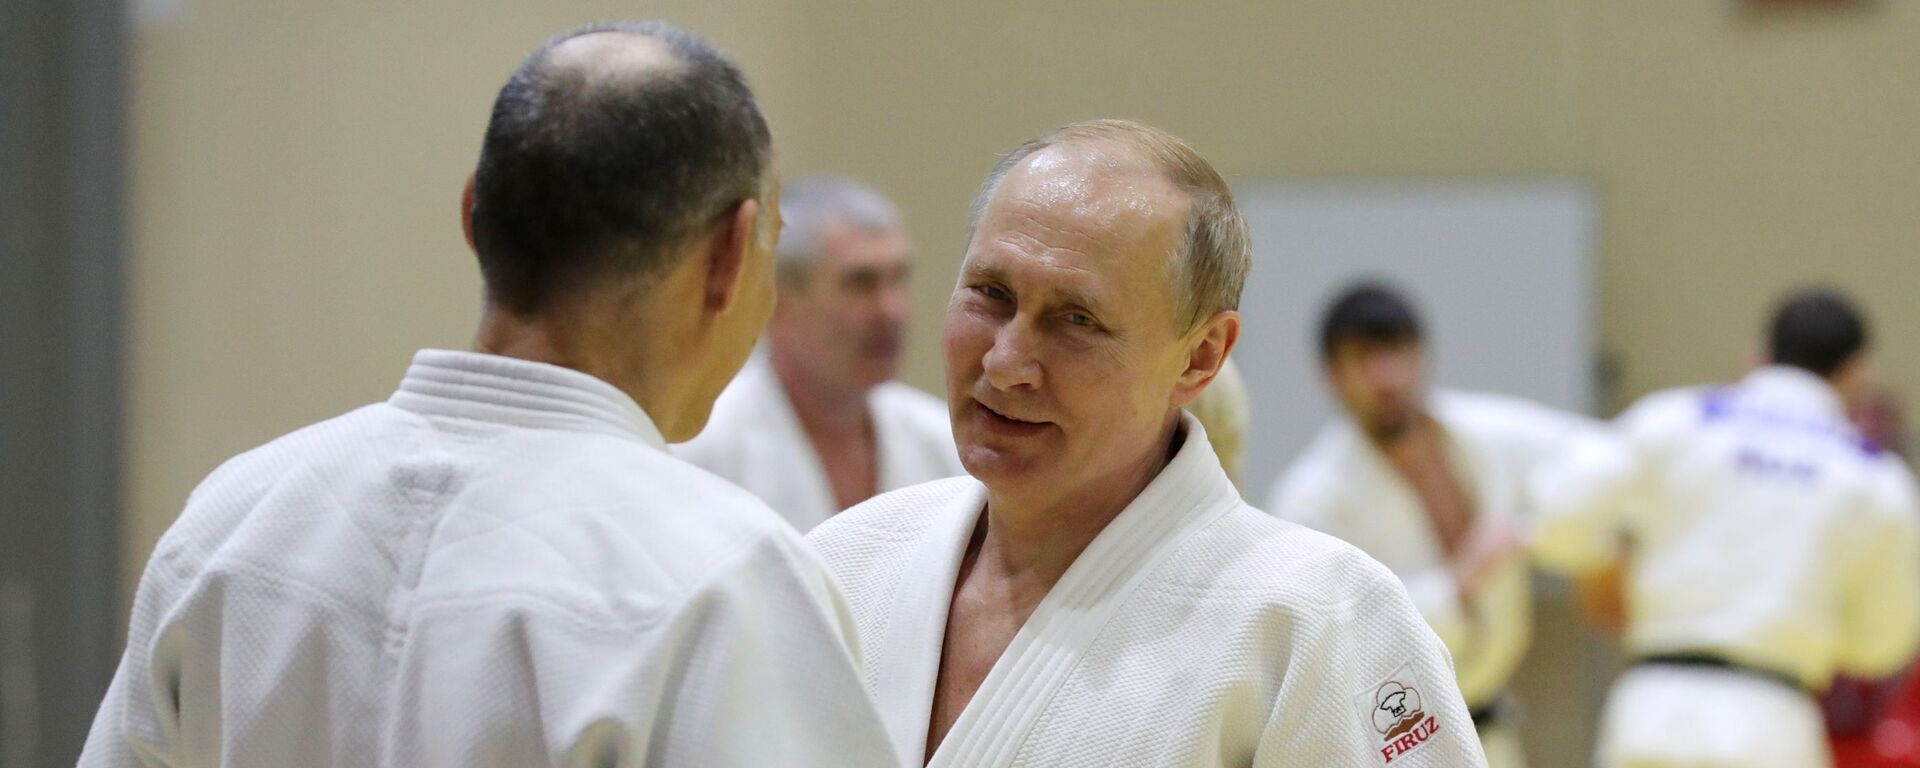 Tổng thống Nga Vladimir Putin trong buổi tập với các thành viên đội tuyển judo quốc gia Nga - Sputnik Việt Nam, 1920, 24.01.2020